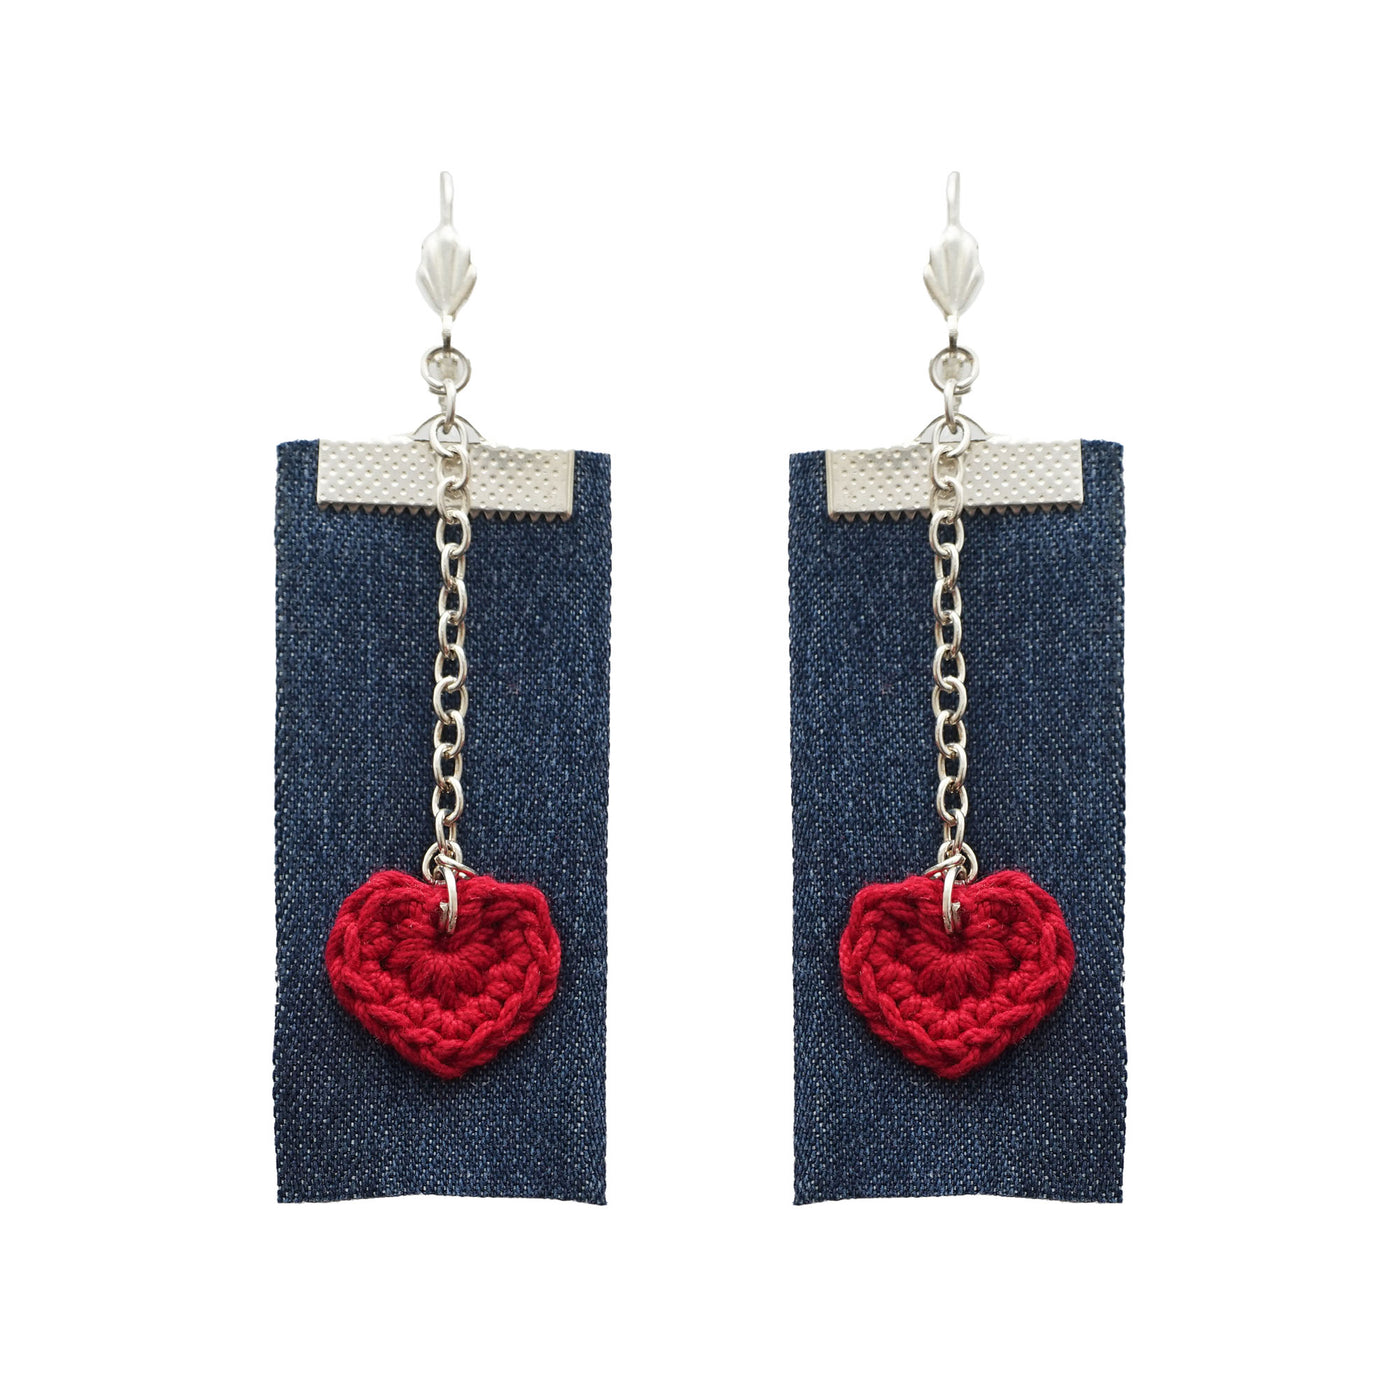 Handcrafted Crochet Earrings- Hearts